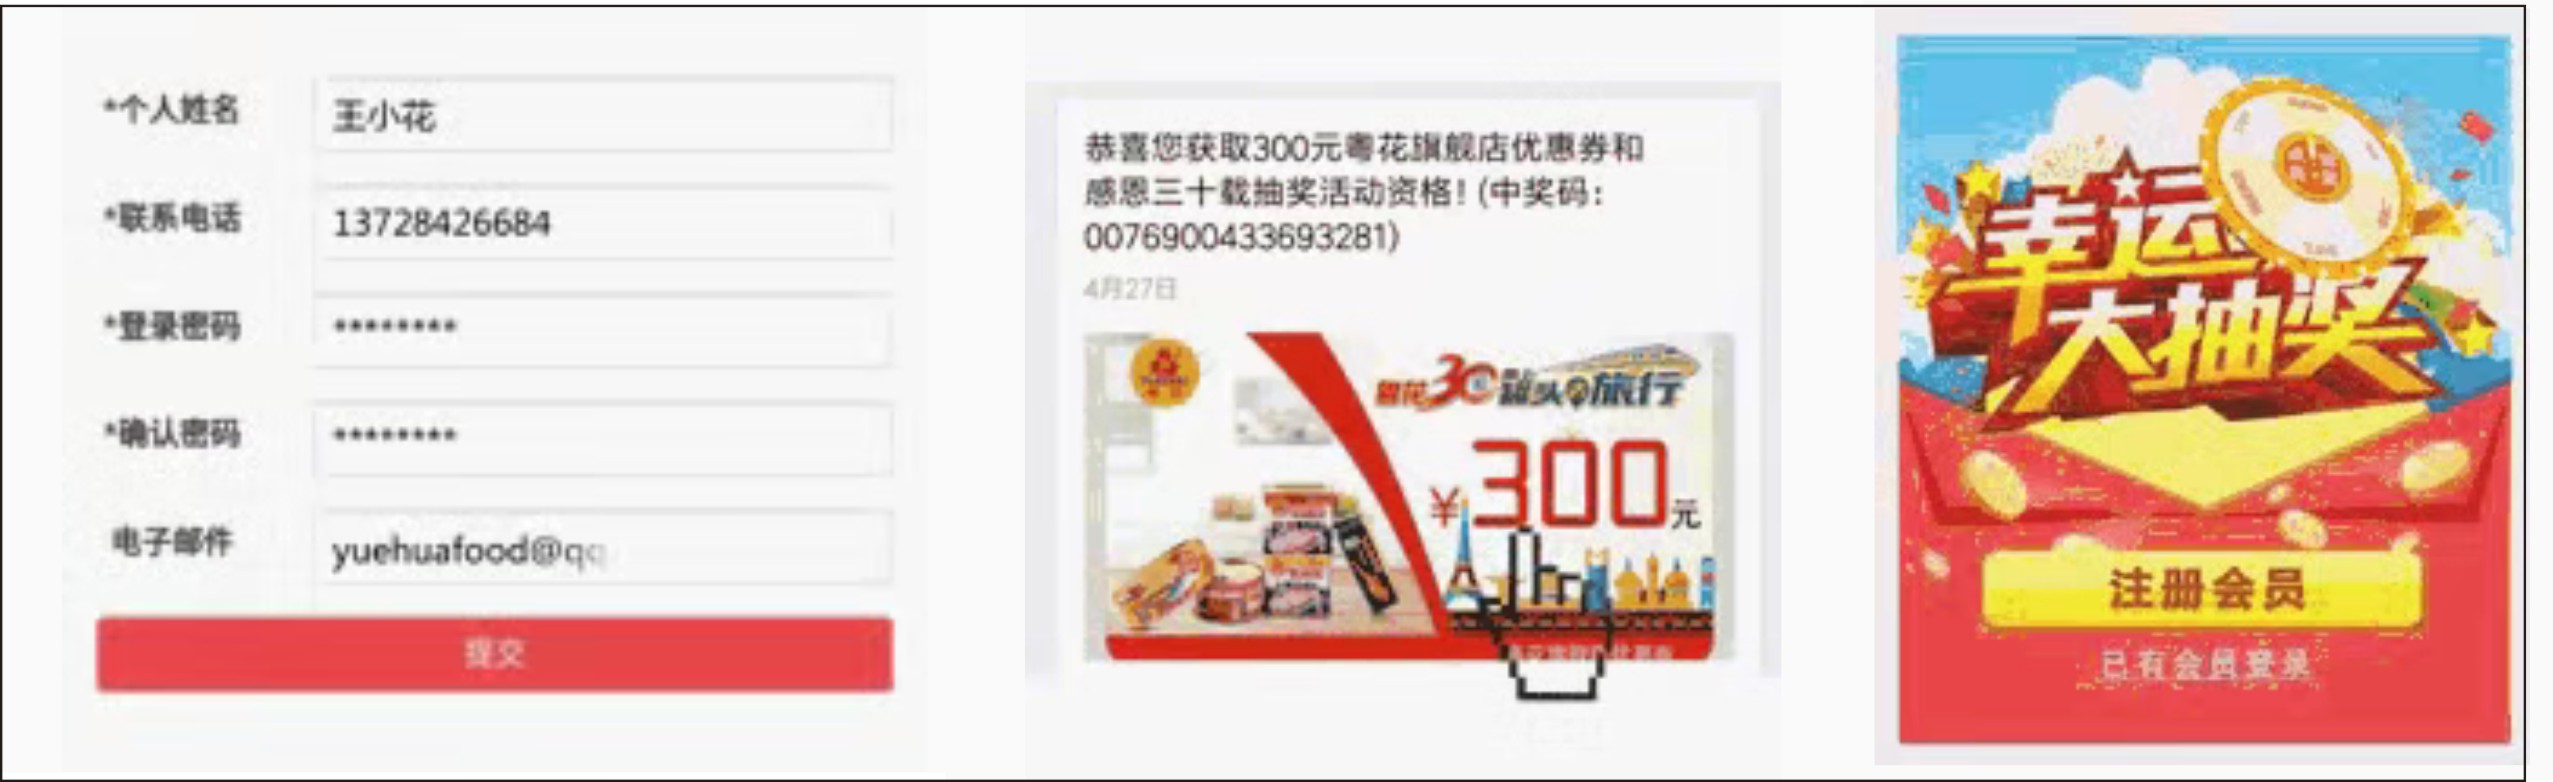 粵花食品攜手雲證物聯網打造微信紅包準確行銷方案 科技 第2張